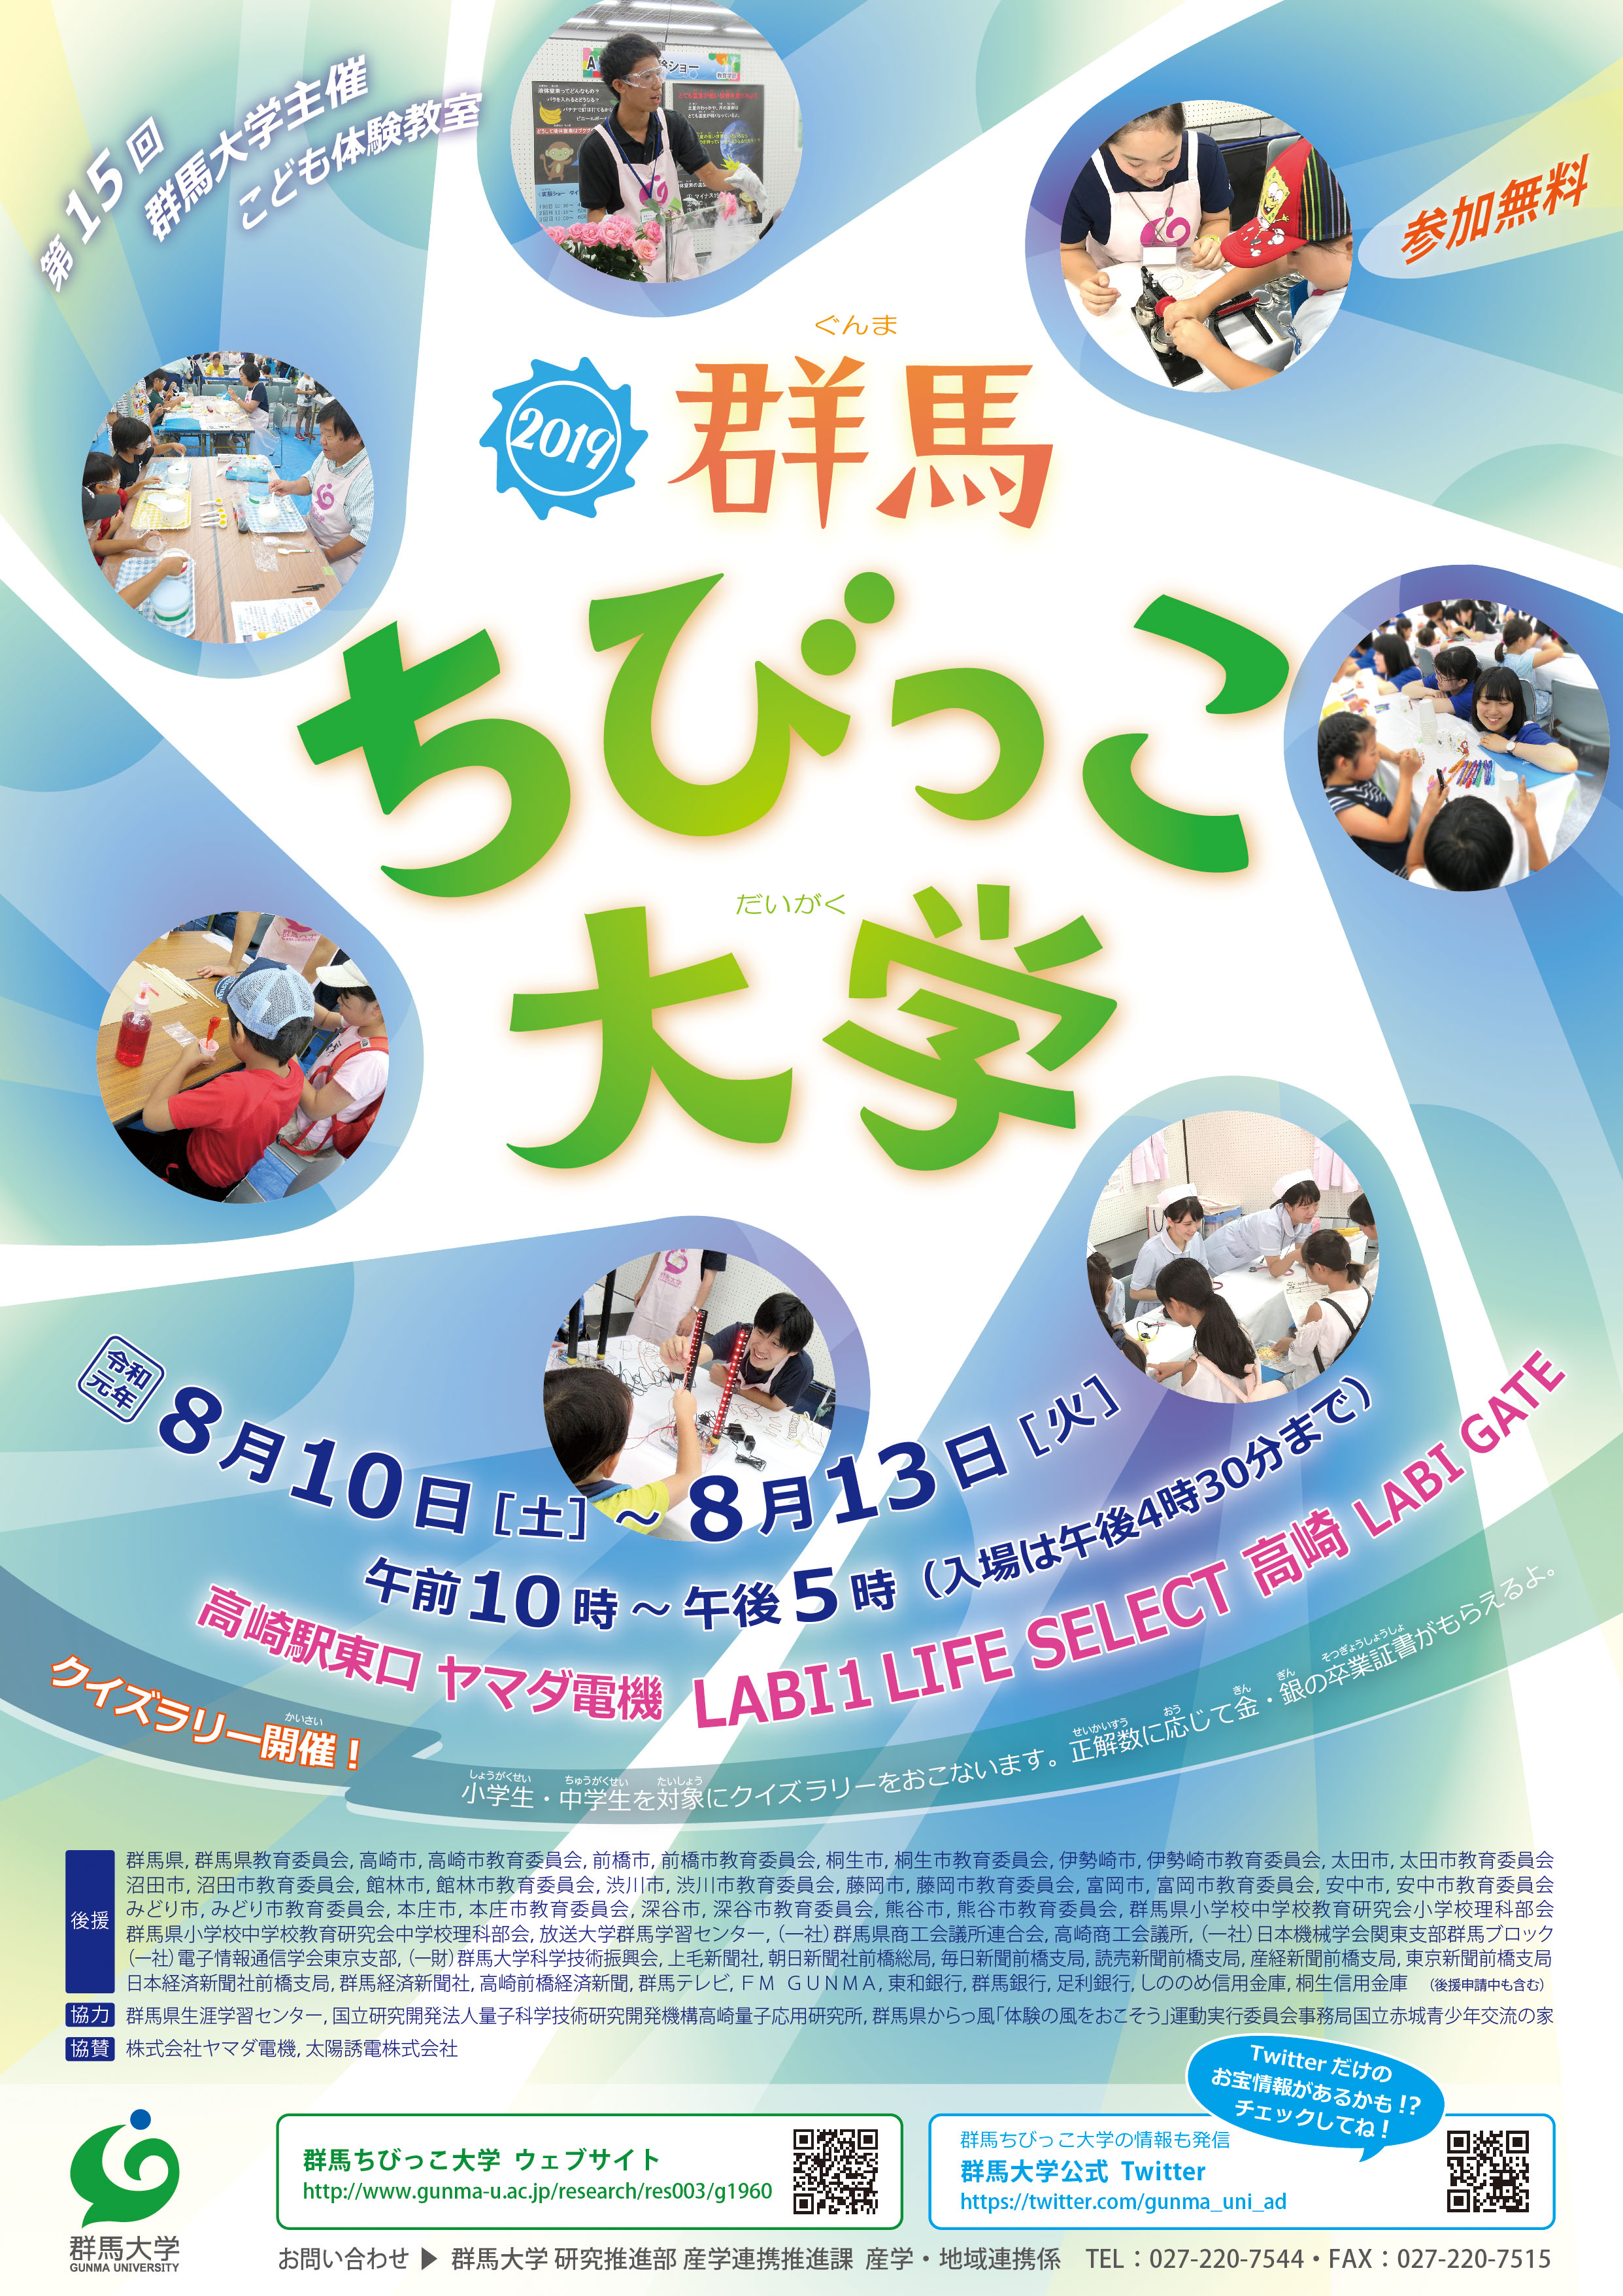 Gunma Kids University